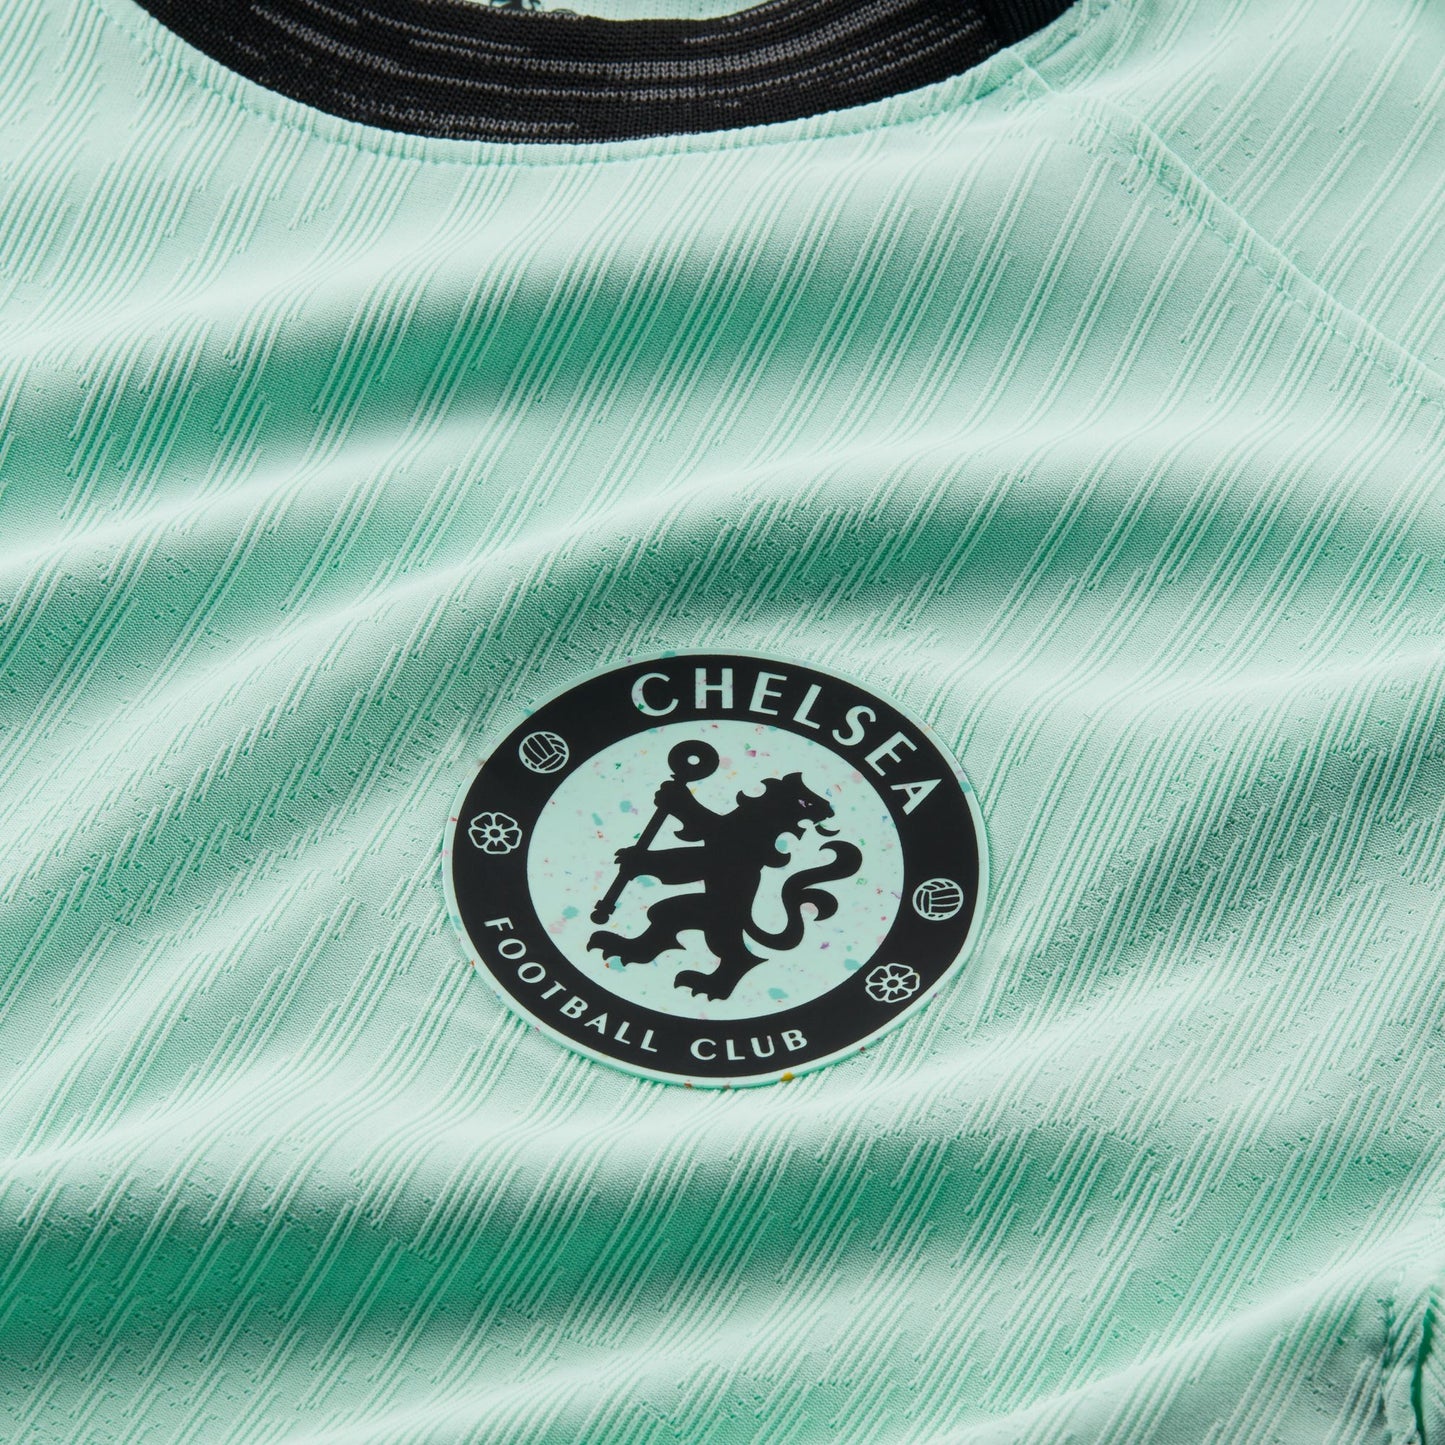 Camiseta Nike Match de corte recto de la tercera equipación del Chelsea 23/34